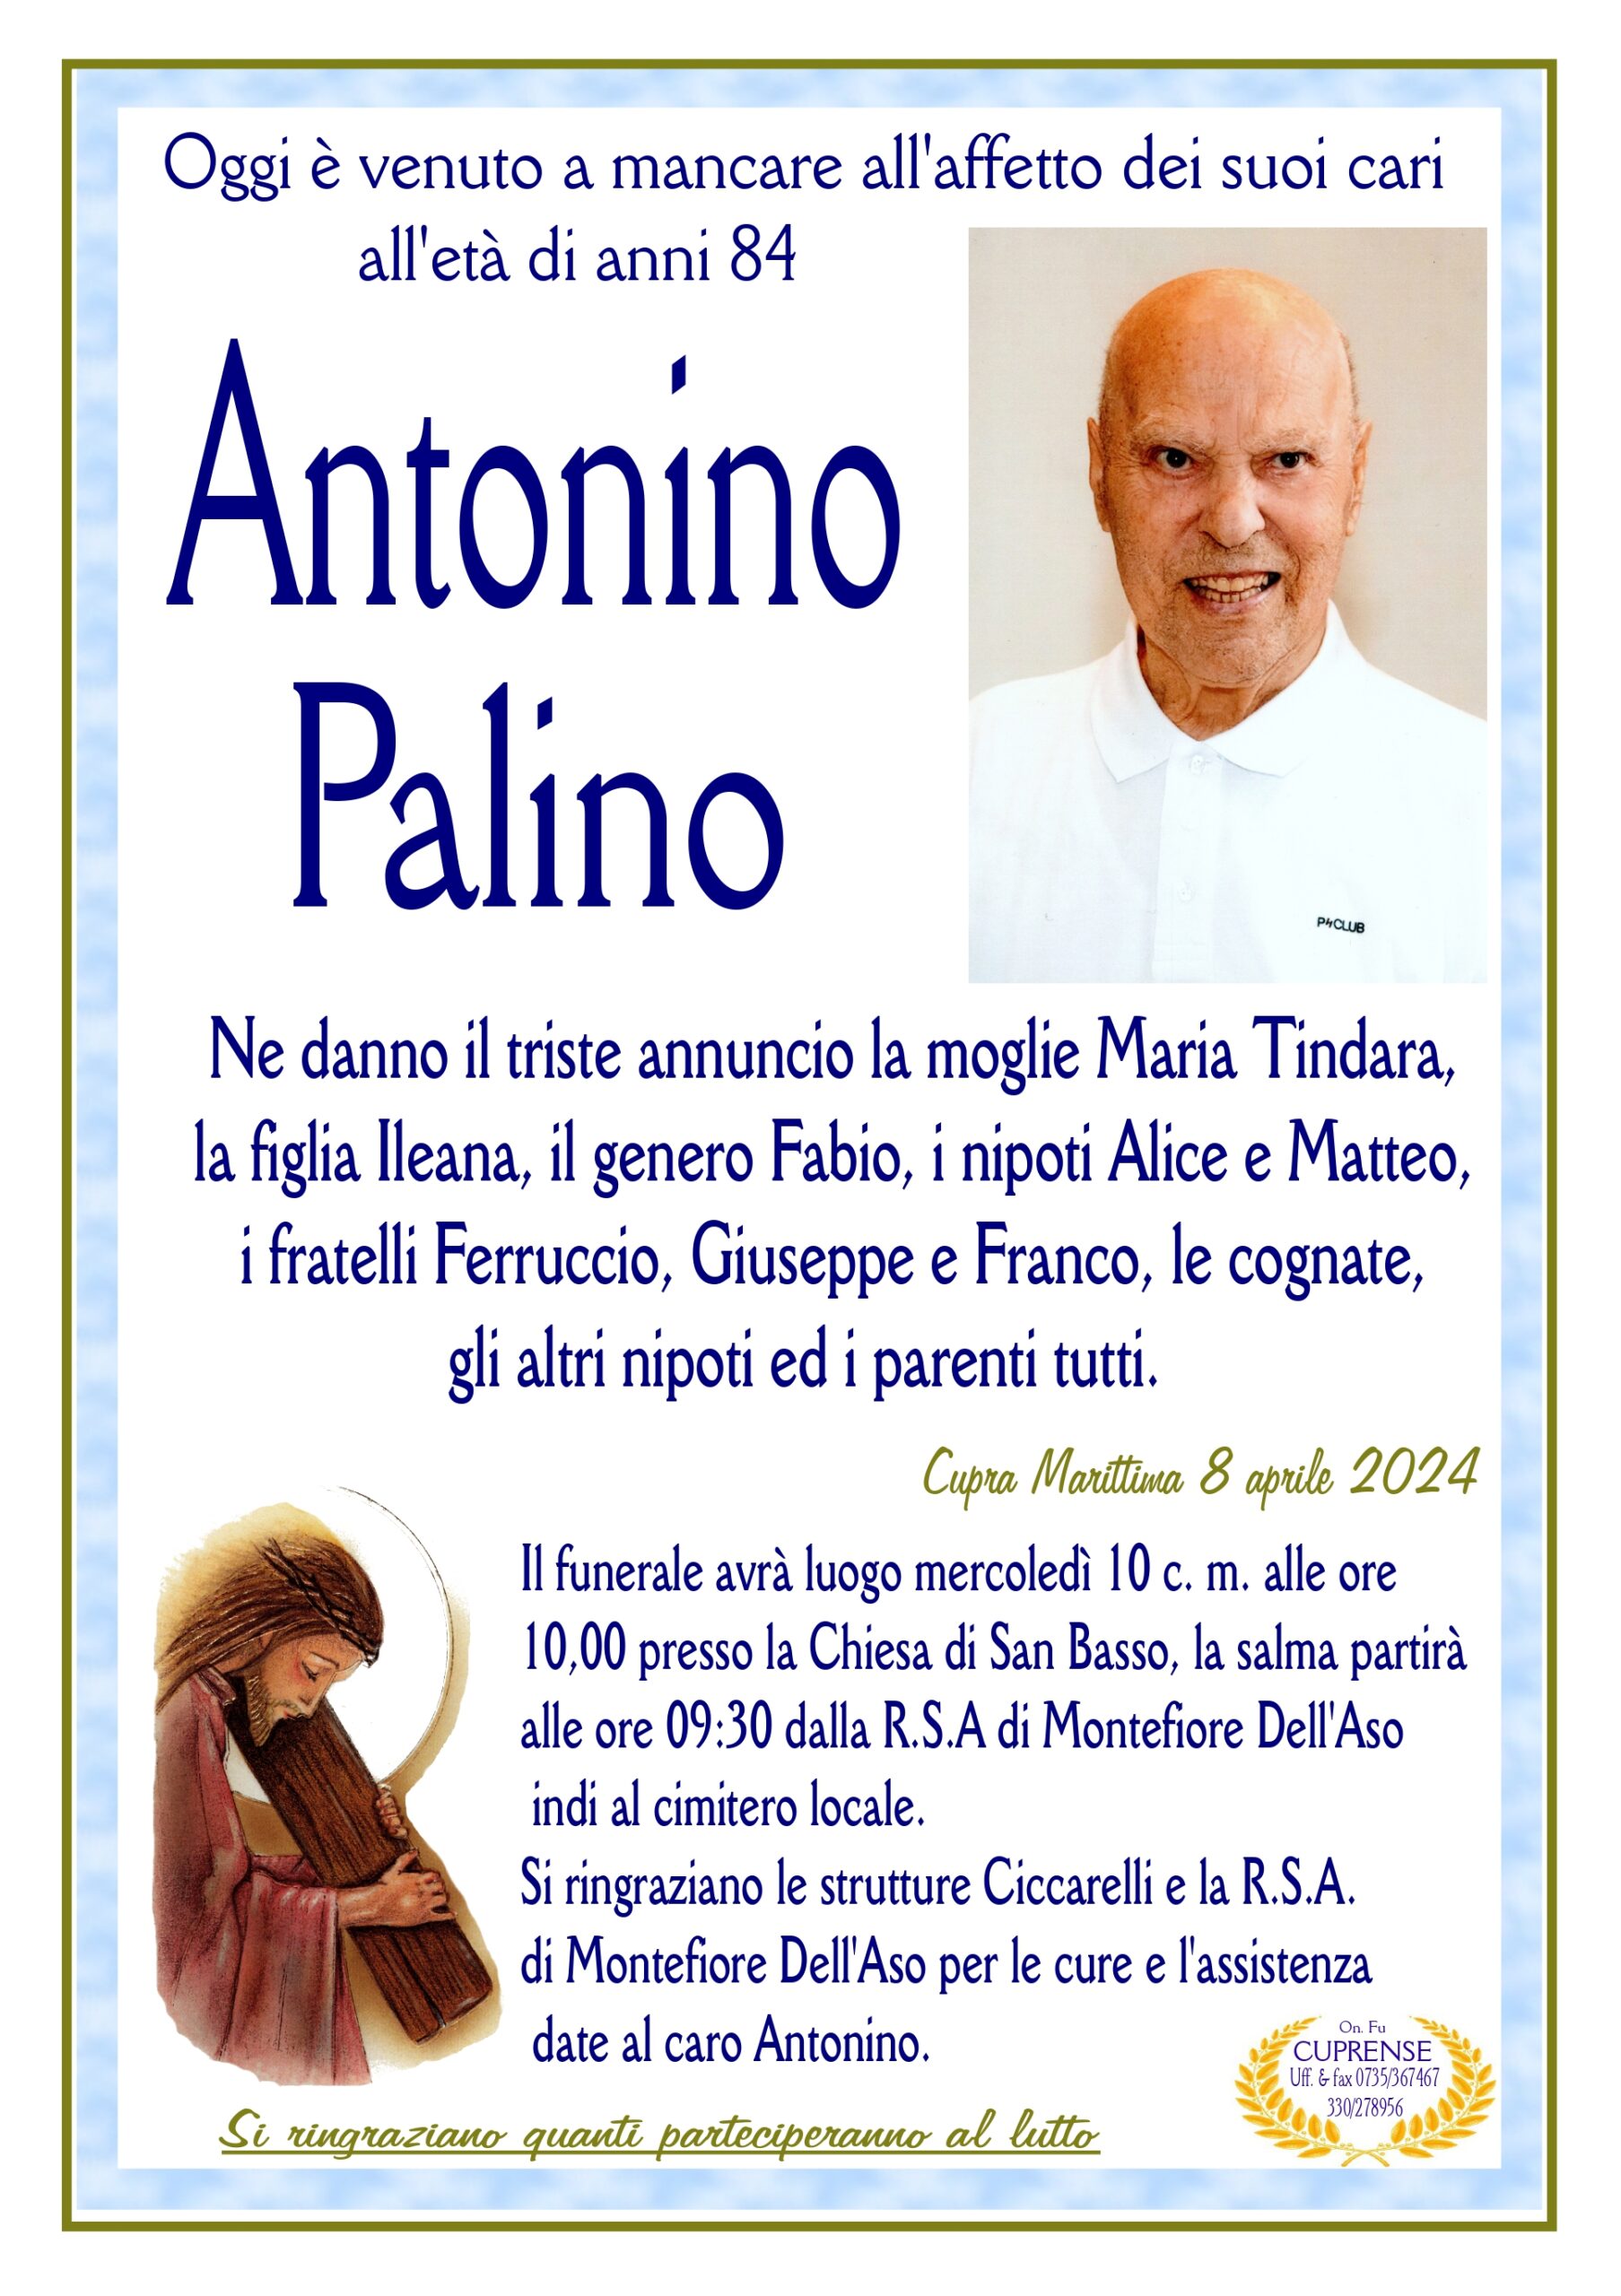 Antonino Palino